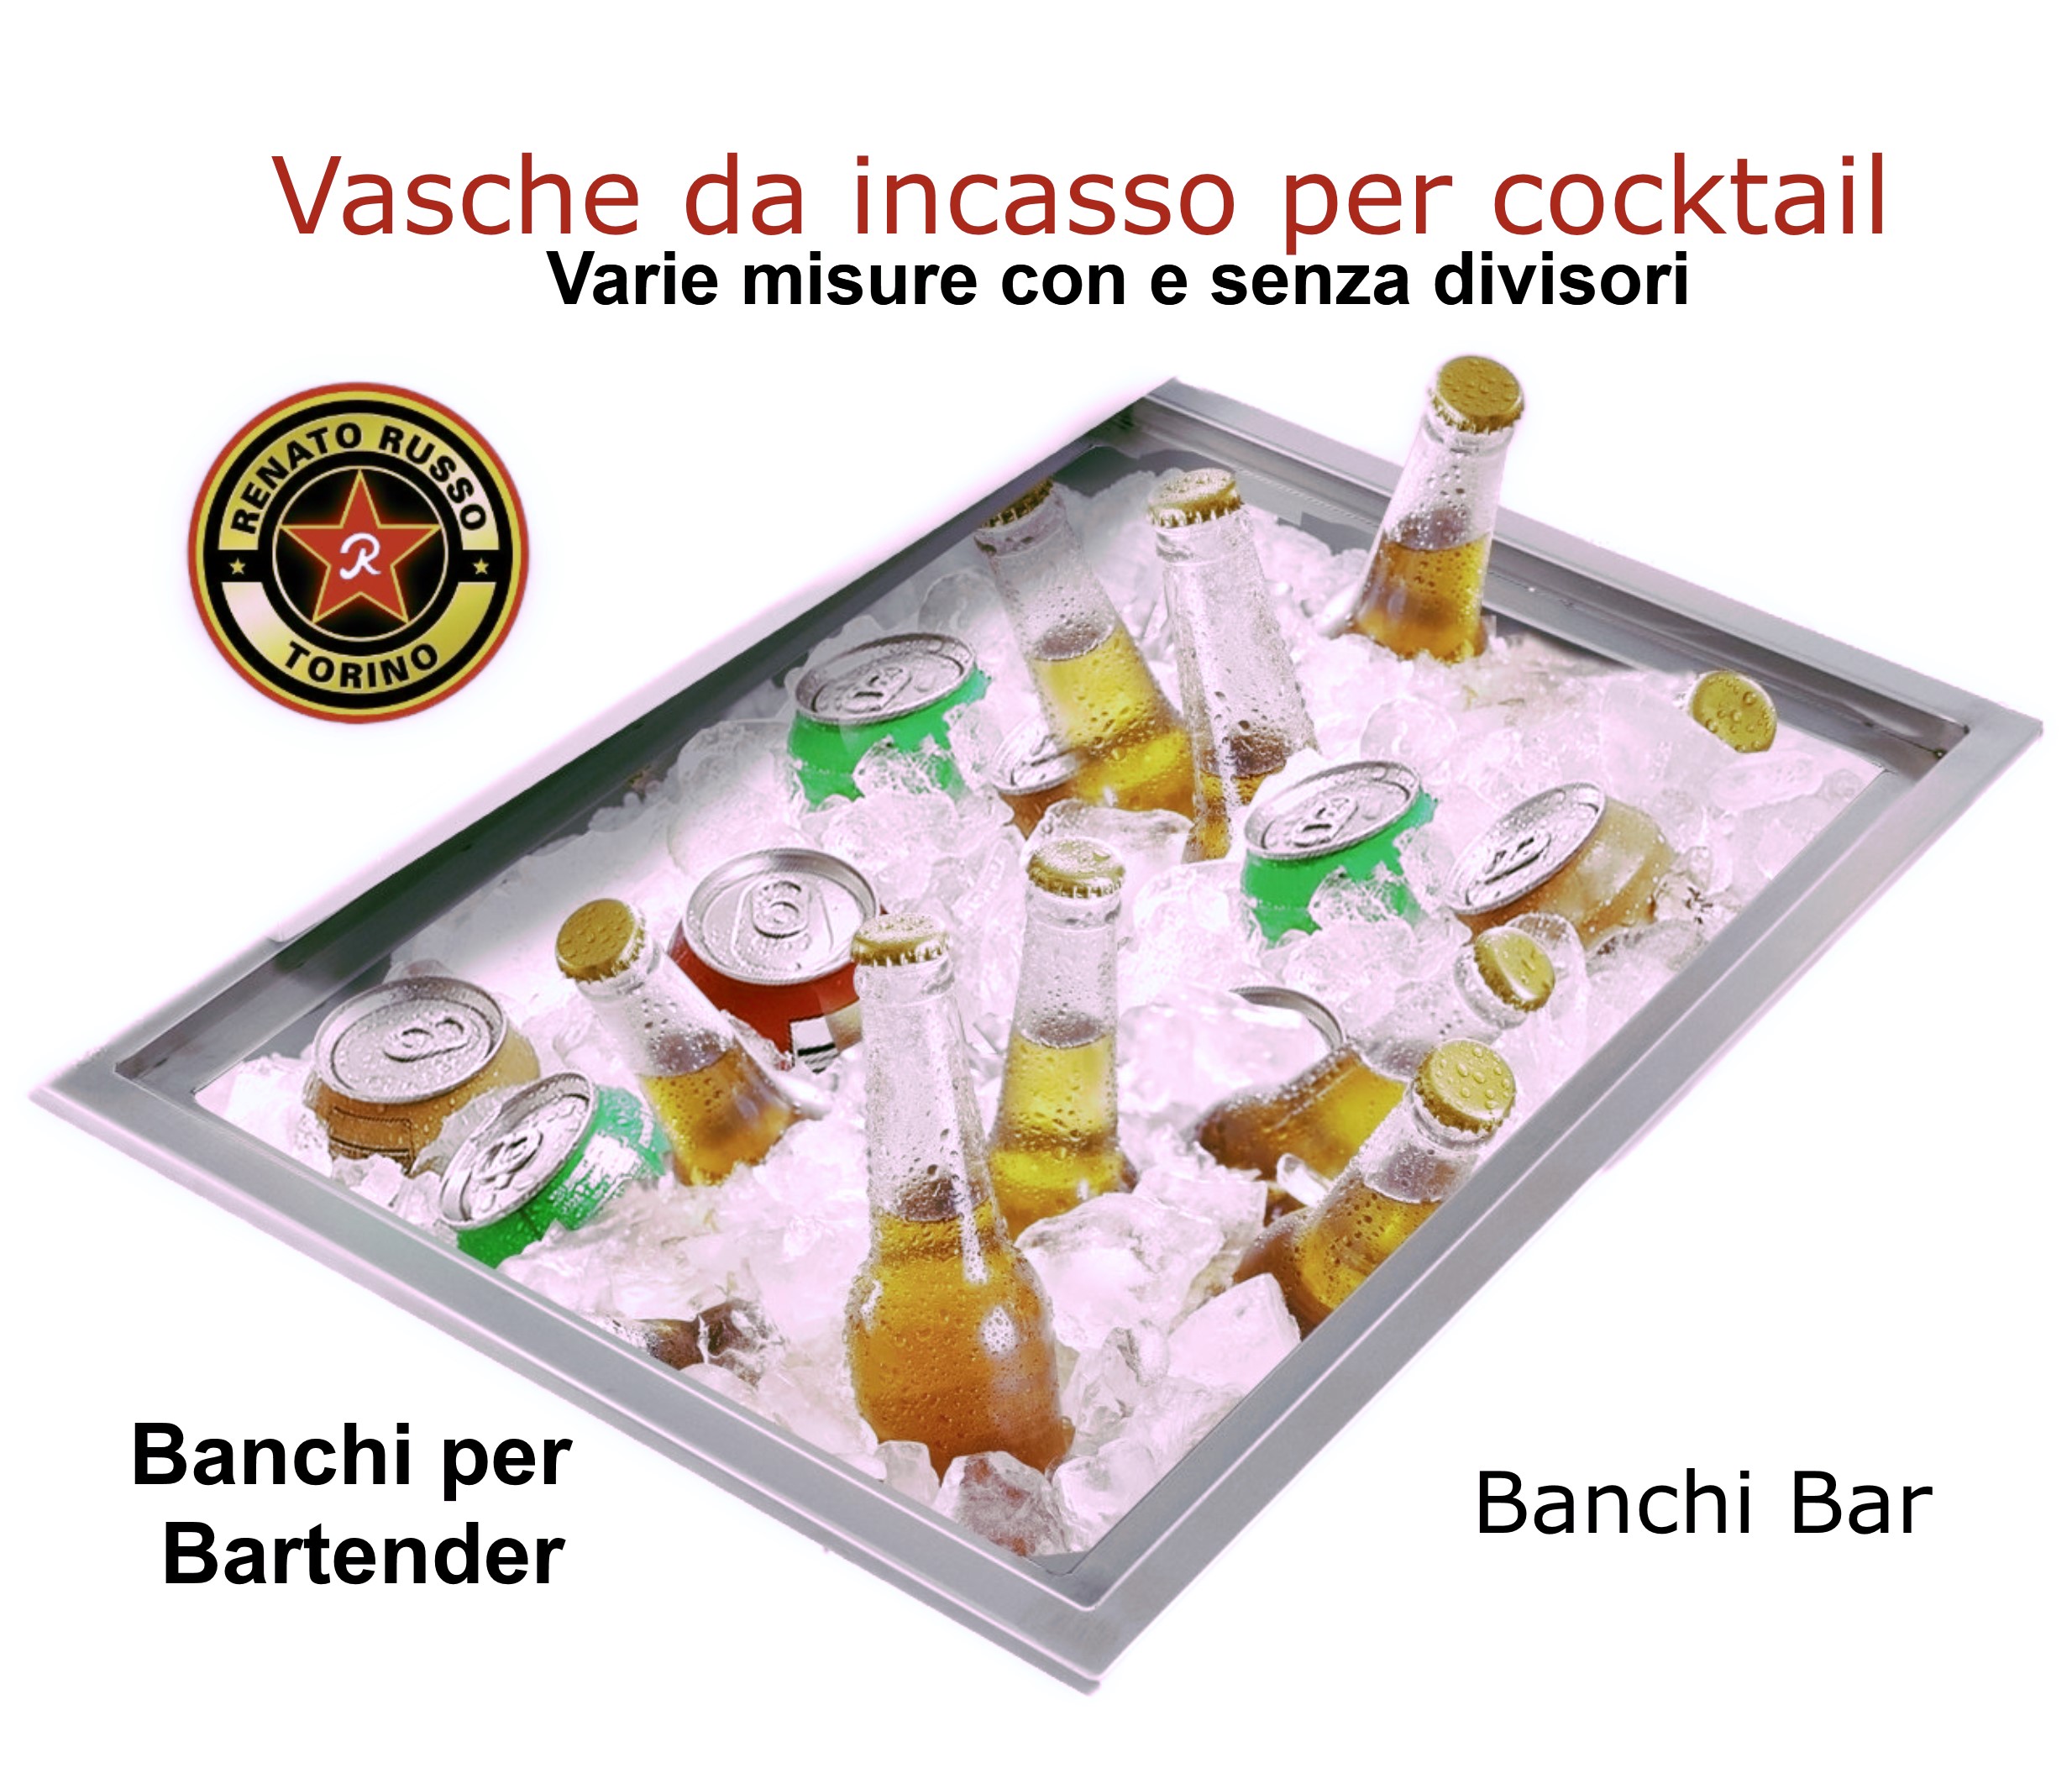 https://www.bar-negozi-ristoranti.it/wp-content/uploads/2022/06/Vasche-per-cocktail-da-incasso-per-ghiaccio-lavorazione-acciaio-inox-Sardegna-sassari-cagliari.jpg